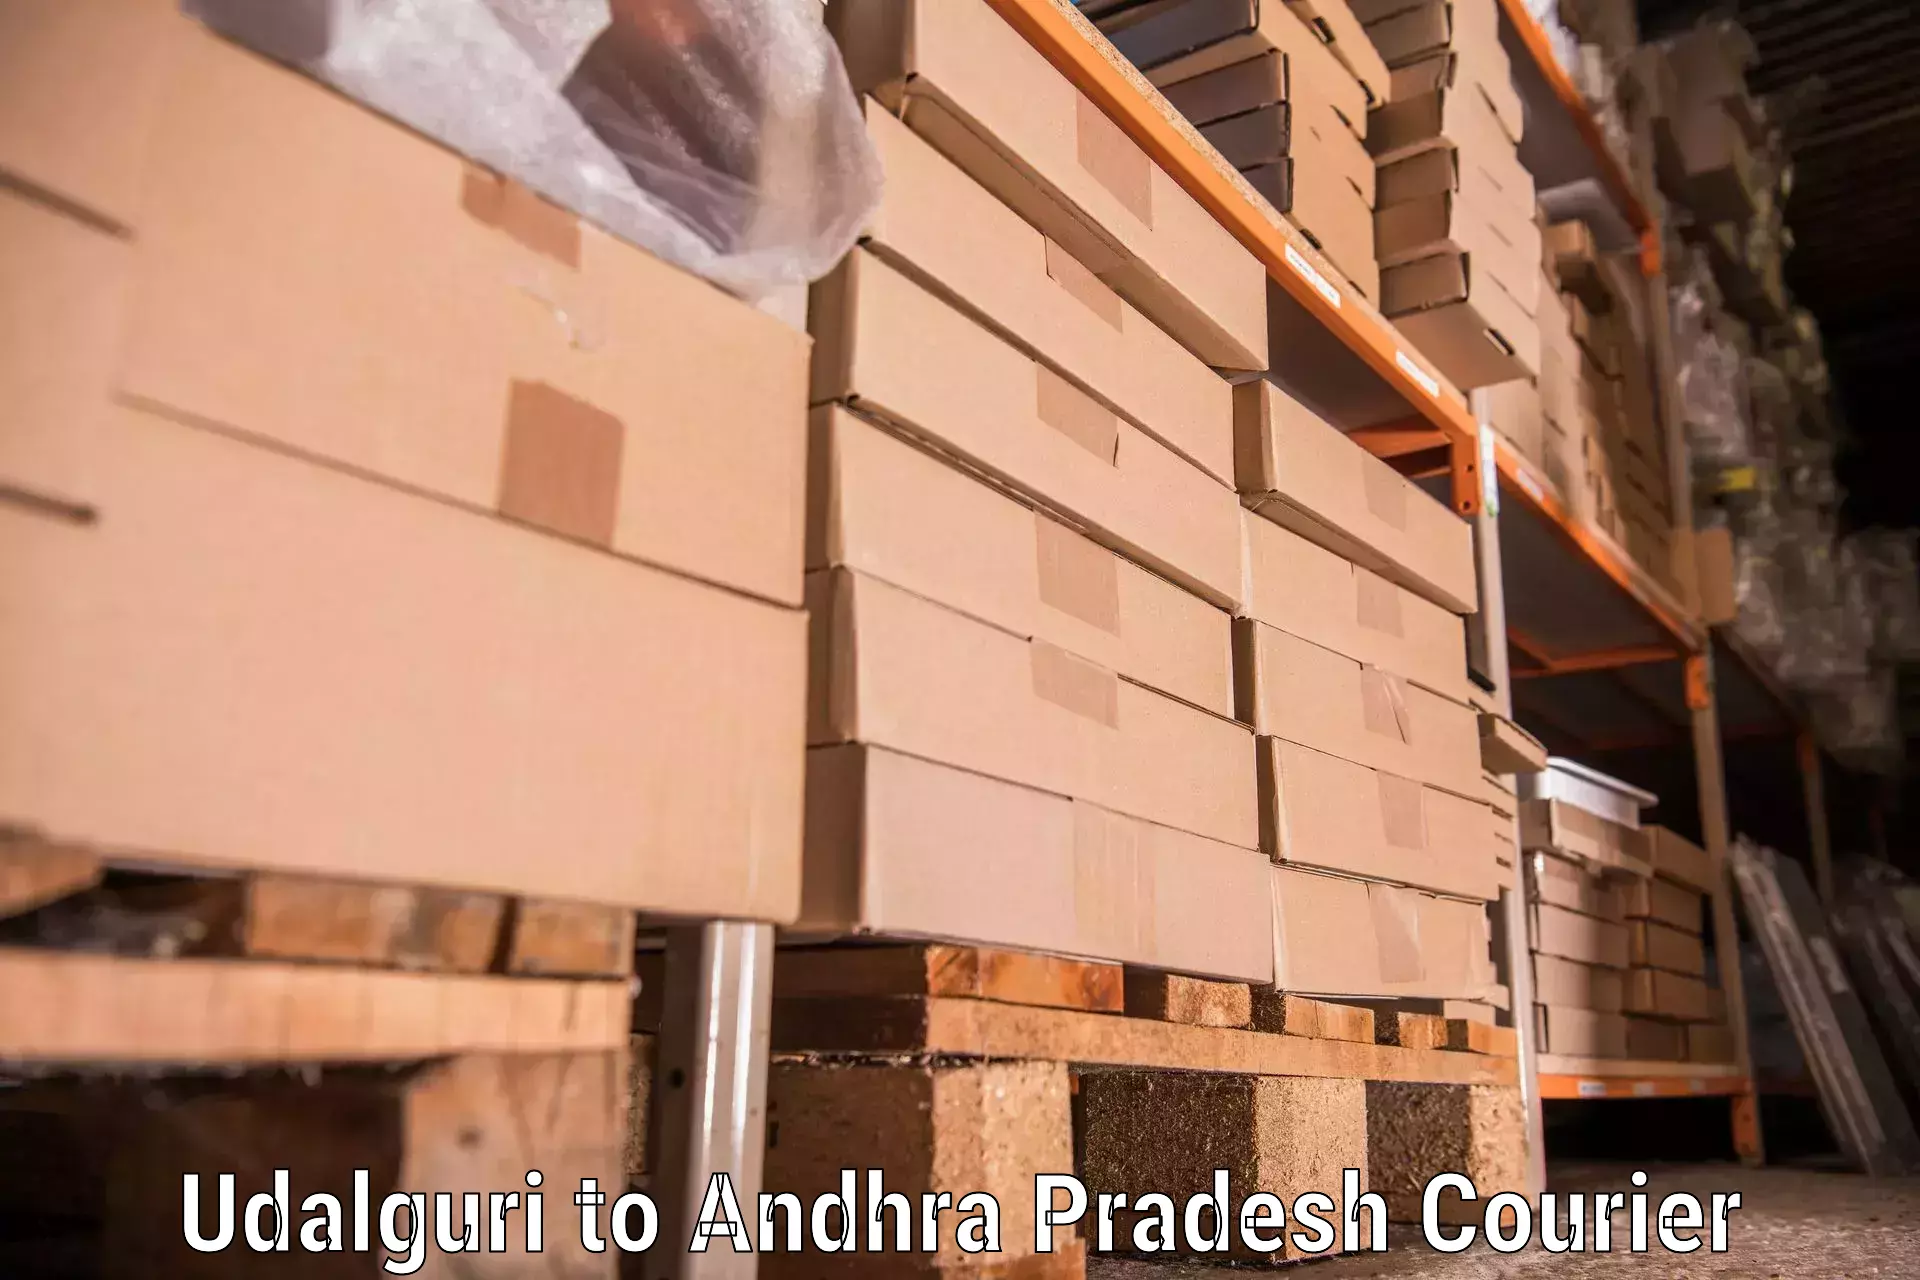 Furniture delivery service Udalguri to Piduguralla